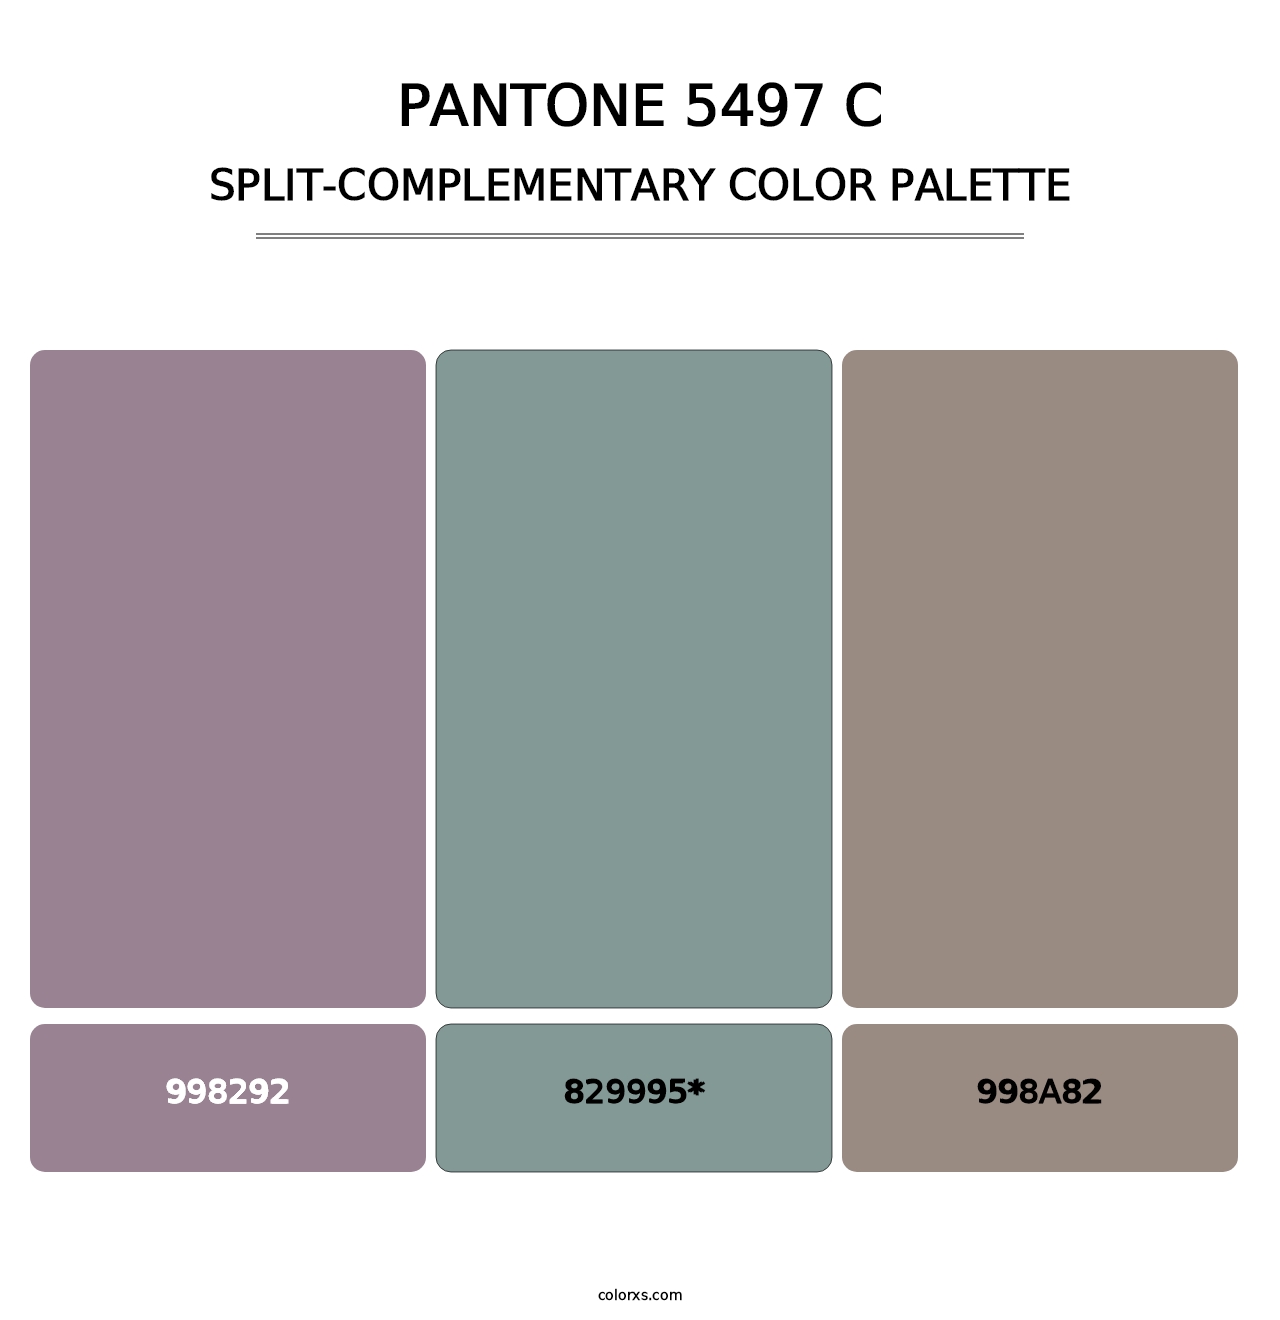 PANTONE 5497 C - Split-Complementary Color Palette